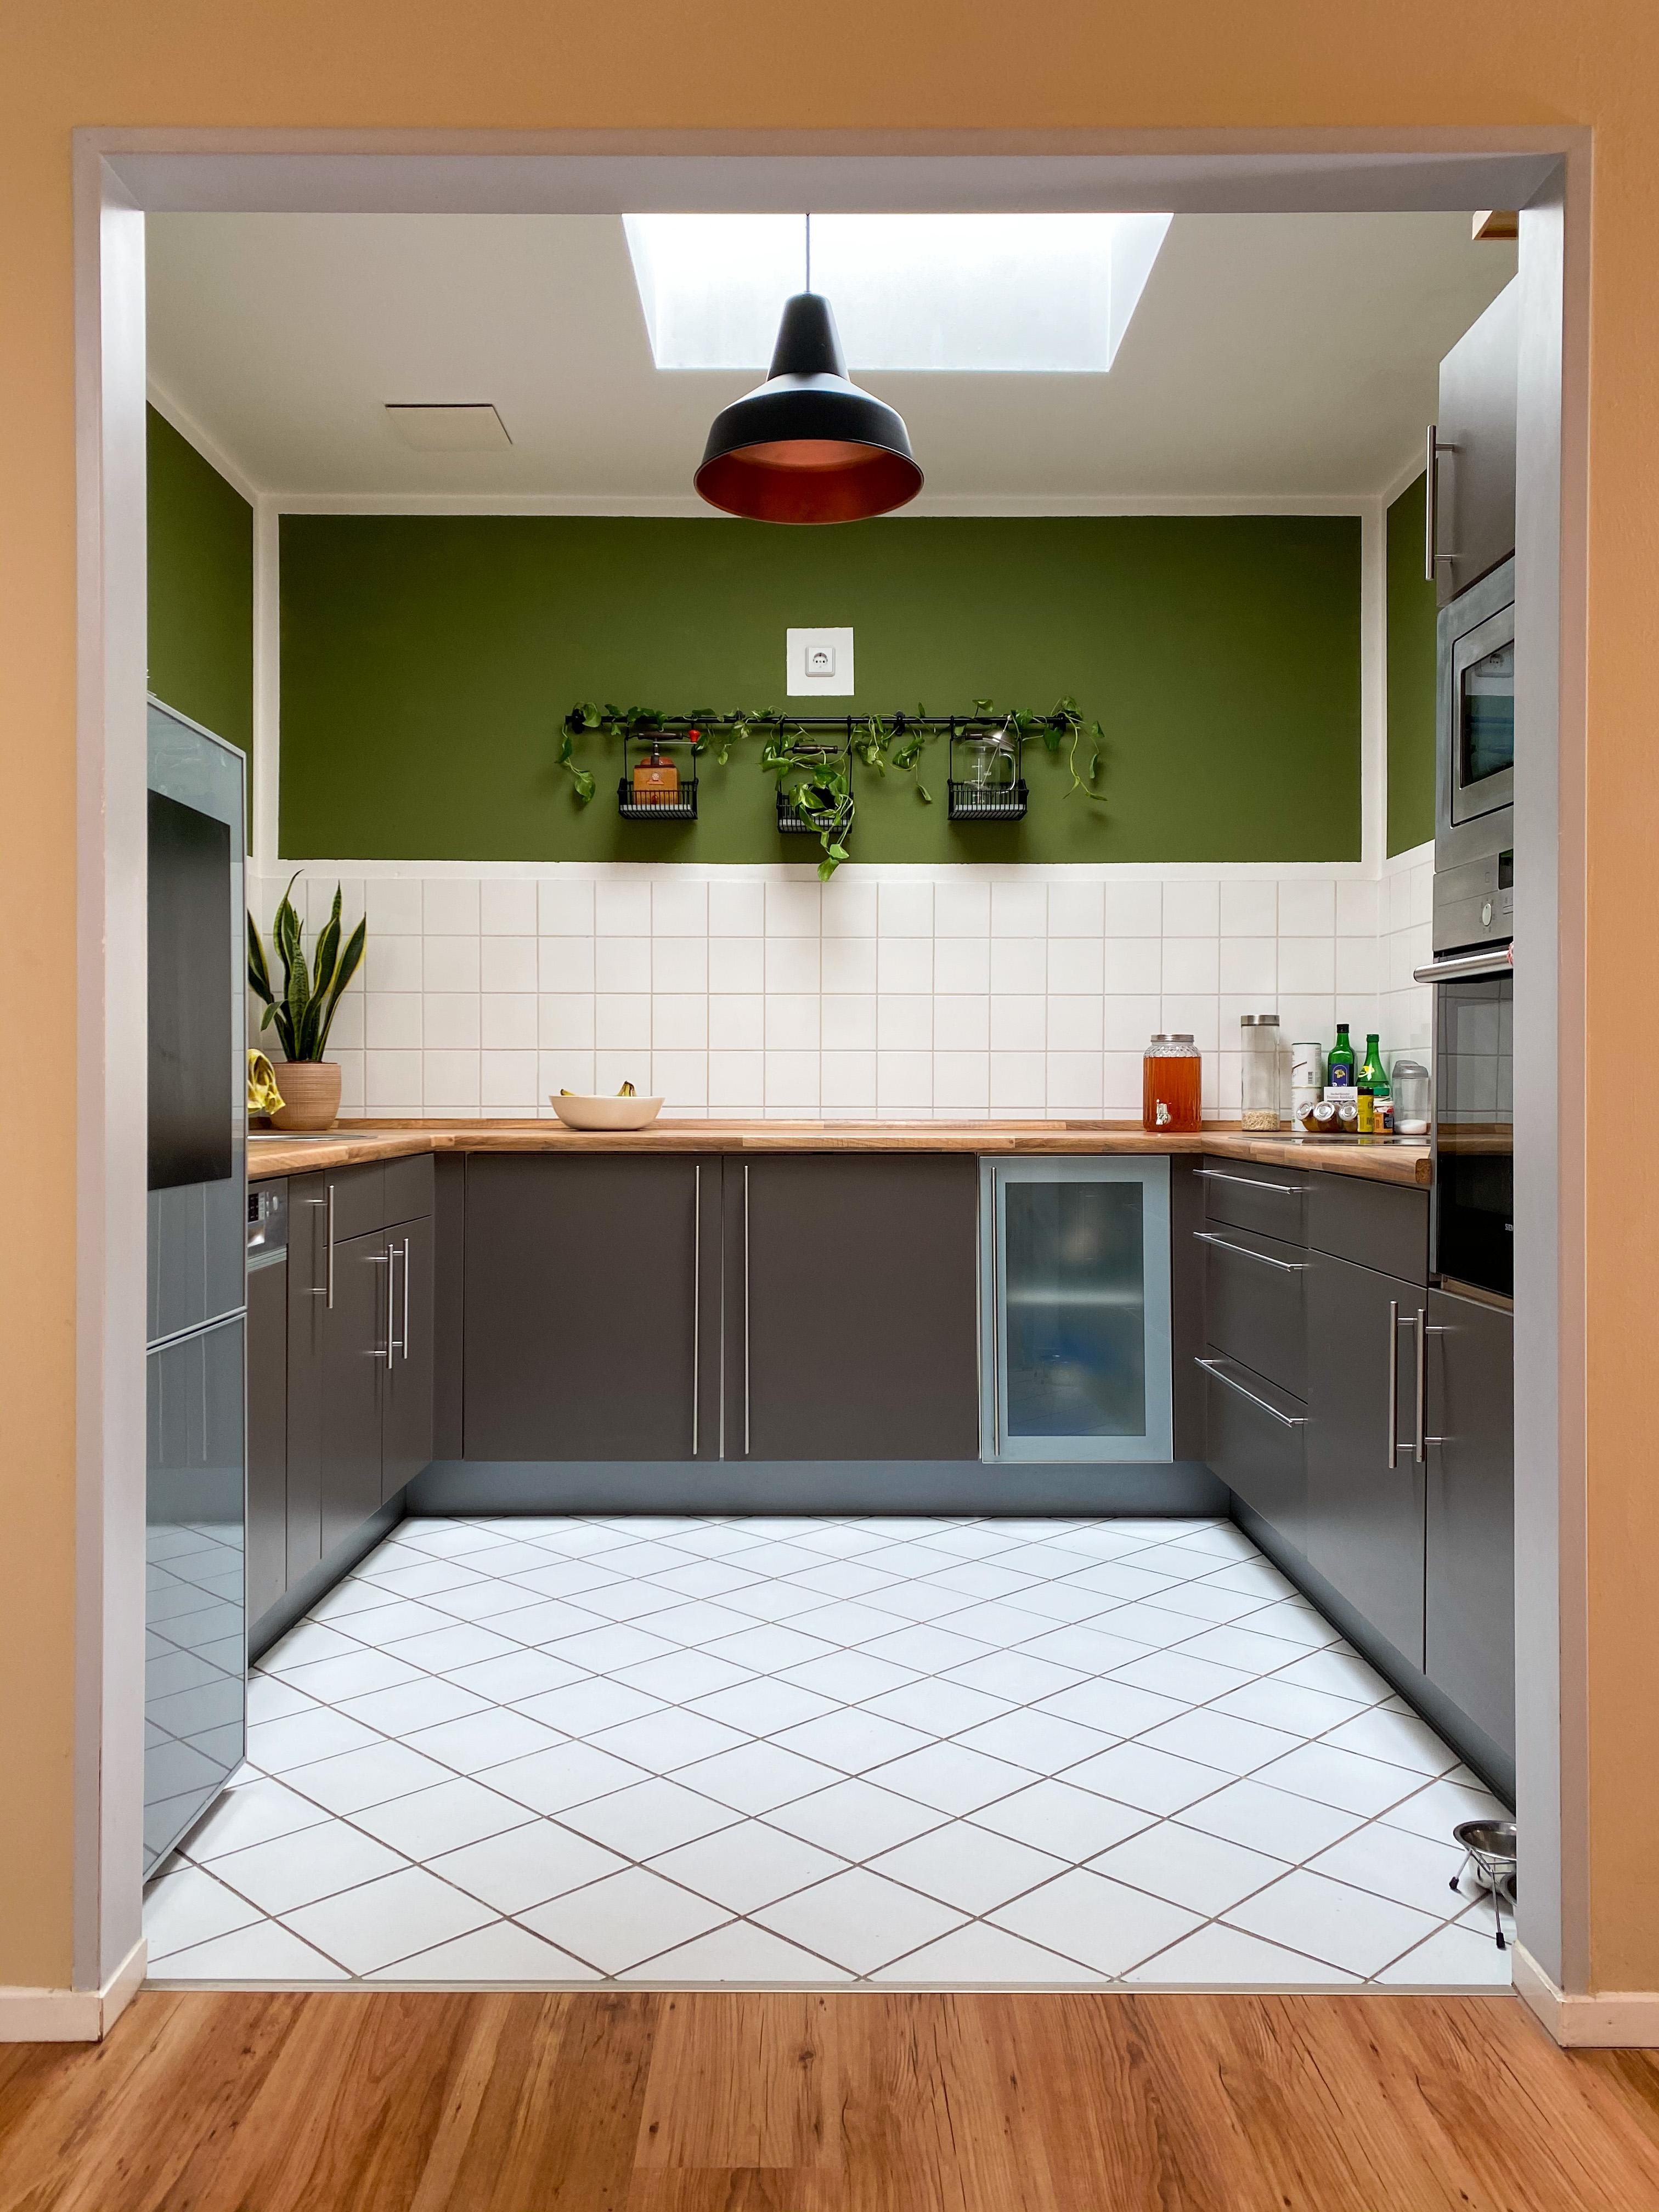 Die #Küche in der neuen Wohnung ist auch wieder #grün geworden. 
#wandfarbe #altbau 